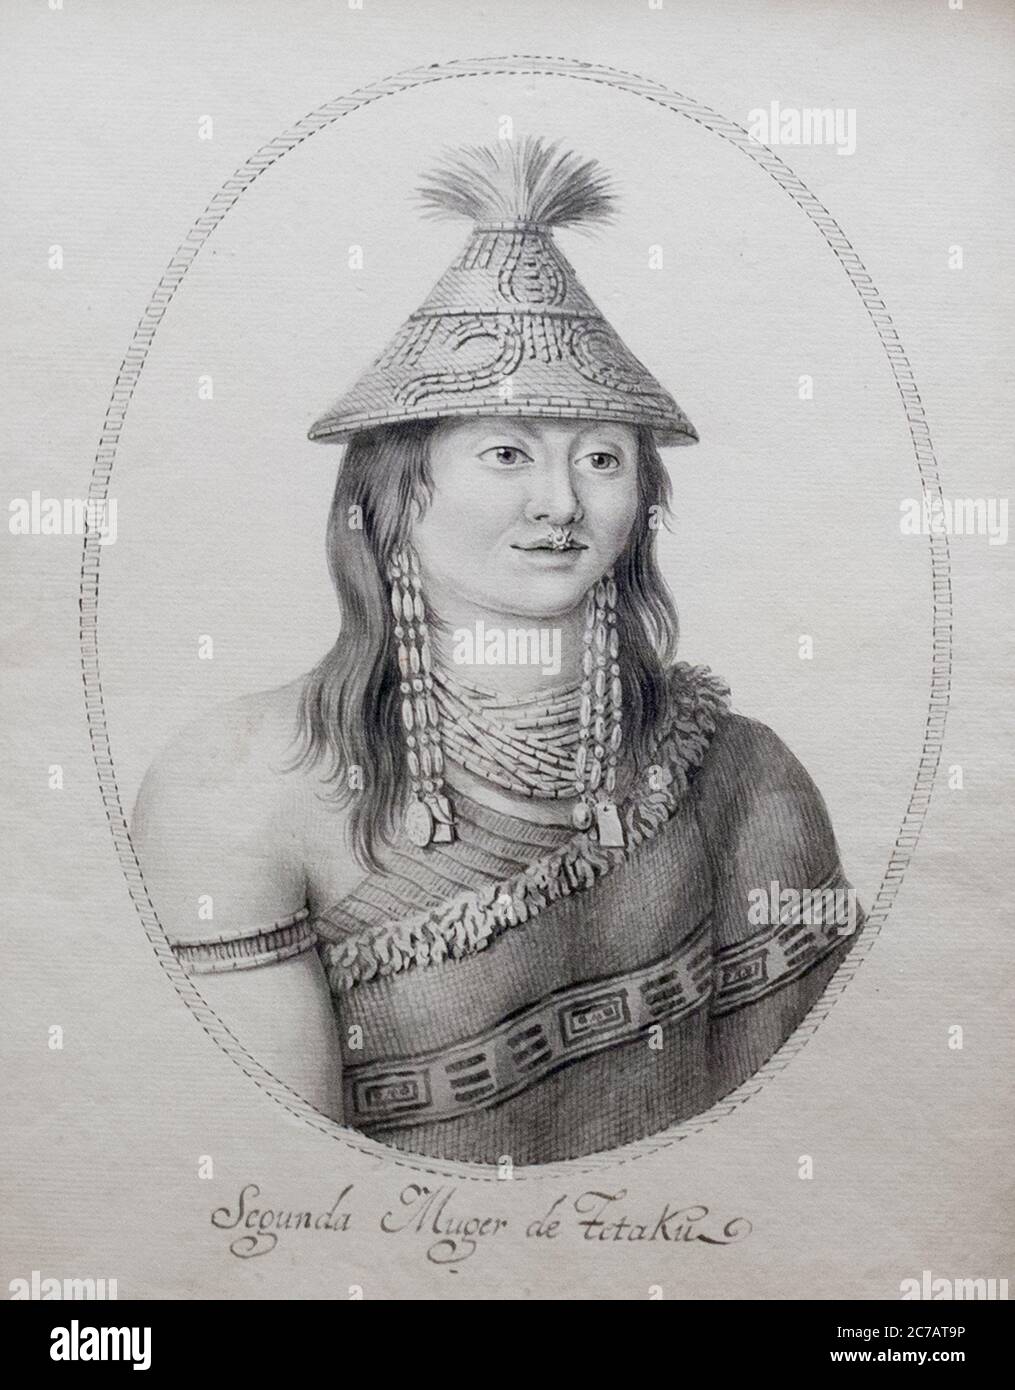 Seconda moglie di Tetaku, Ritratto. Makah capo, penisola olimpica nello stato indigeno di Washington. Incisione Foto Stock